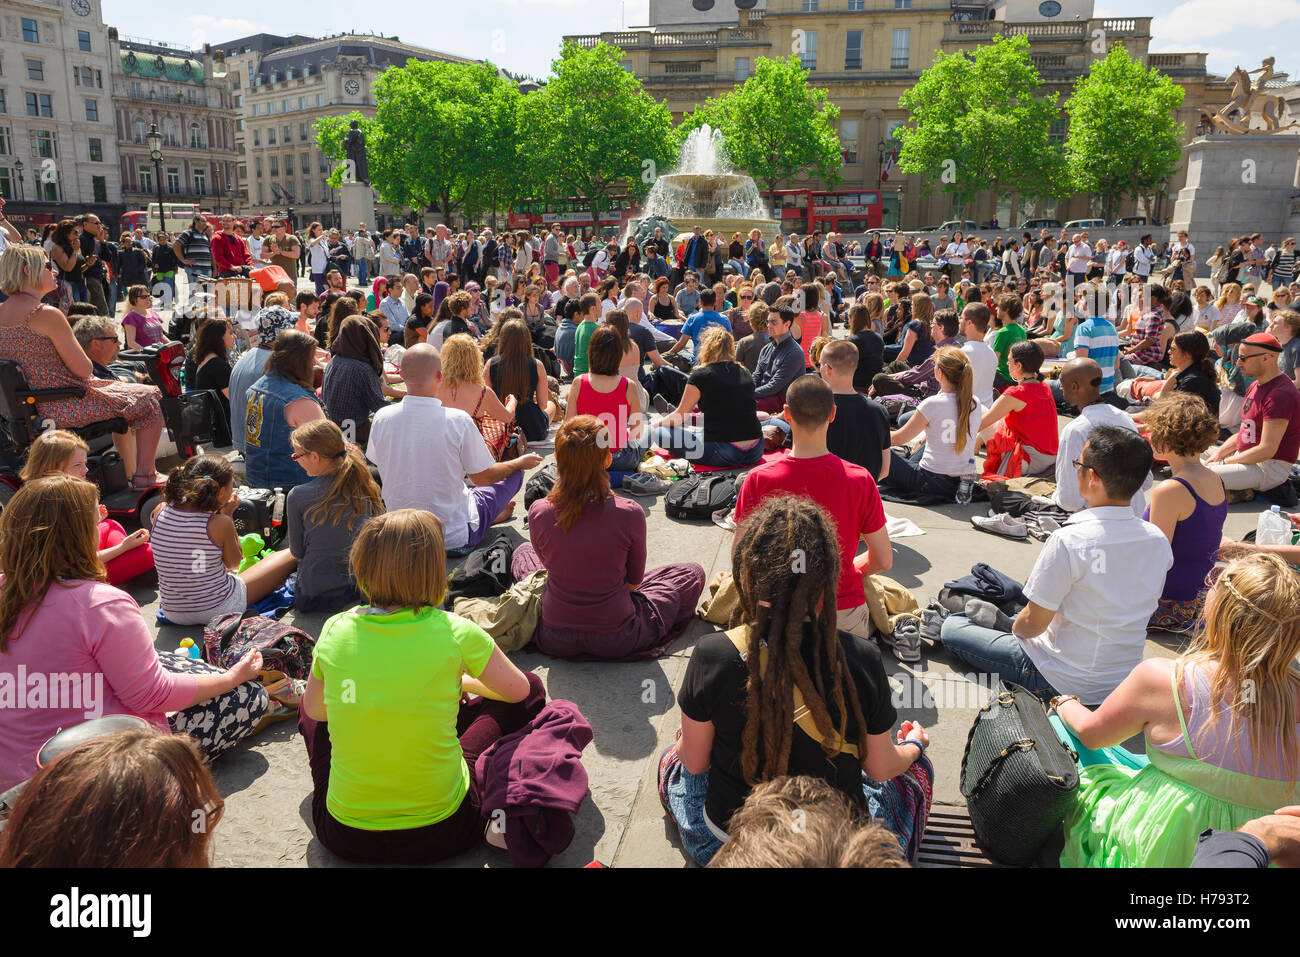 Lieu de méditation, vue arrière des participants à un groupe de masse la méditation à Trafalgar Square, Londres, Royaume-Uni. Banque D'Images